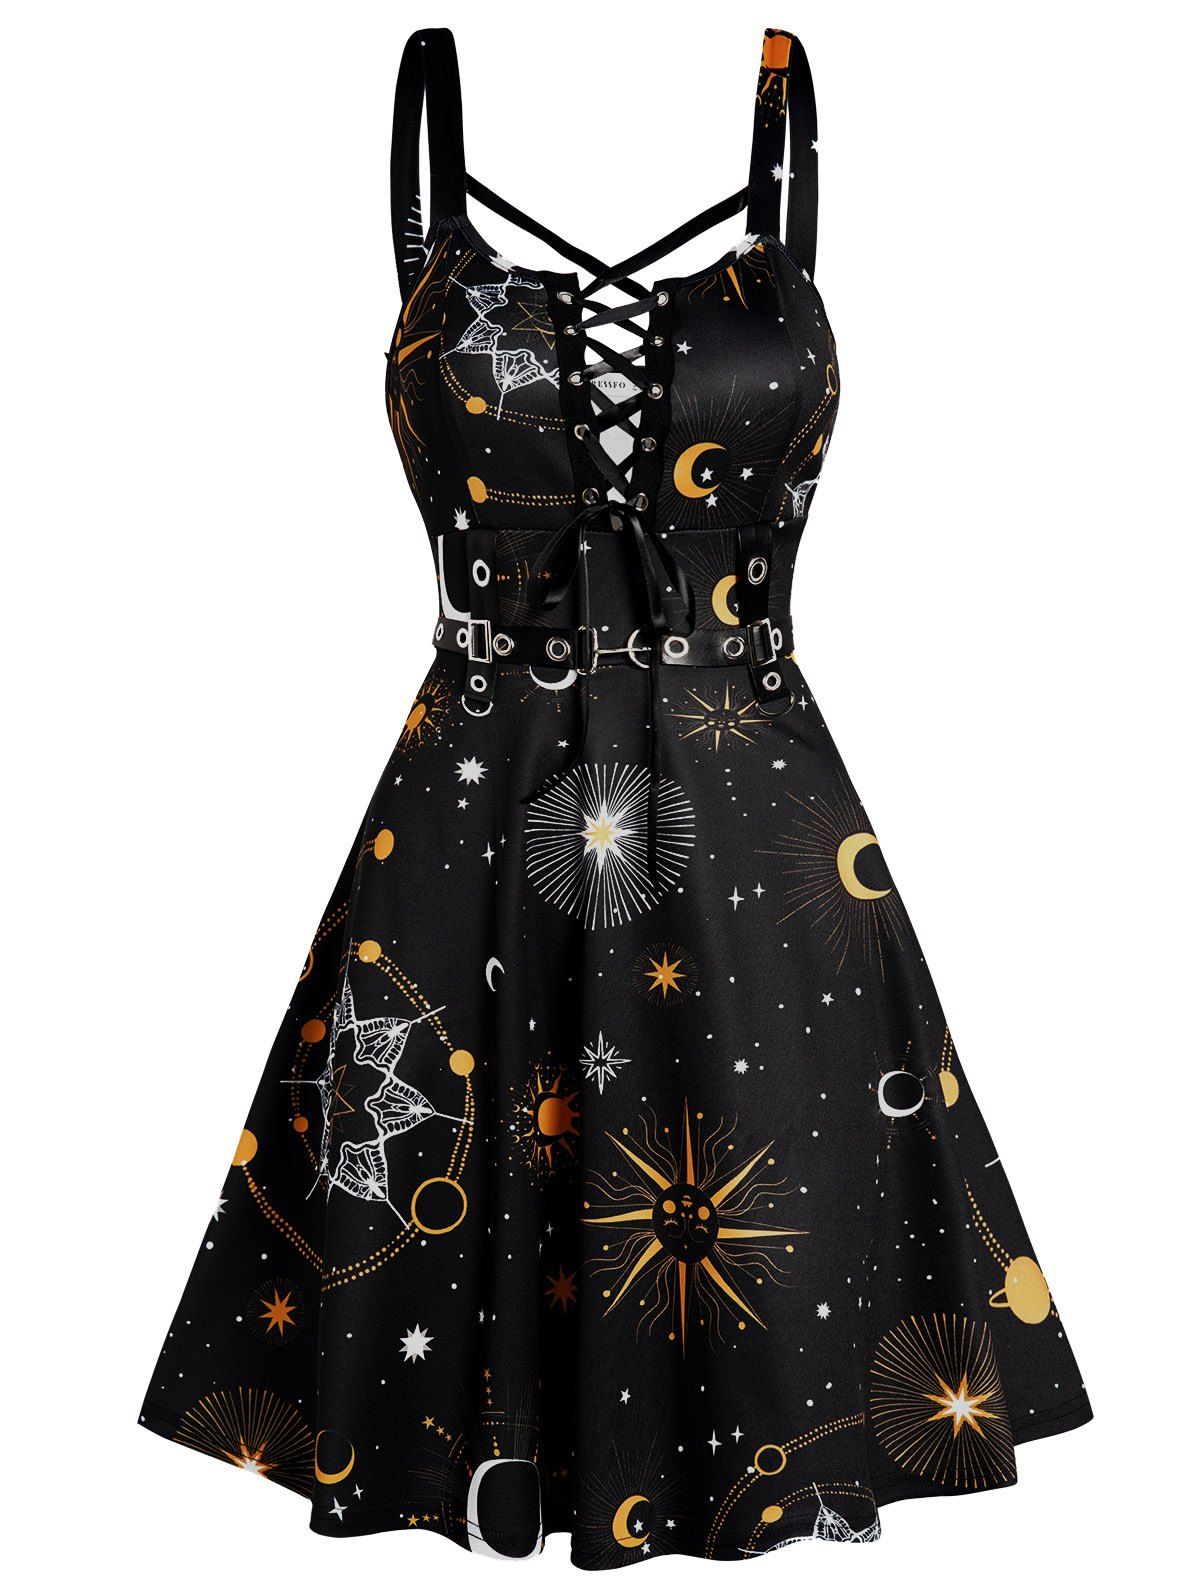 Sun Moon Star Print Dress Lace Up Grommet Buckle Strap Crisscross High Waisted A Line Mini Dress - BLACK XXL